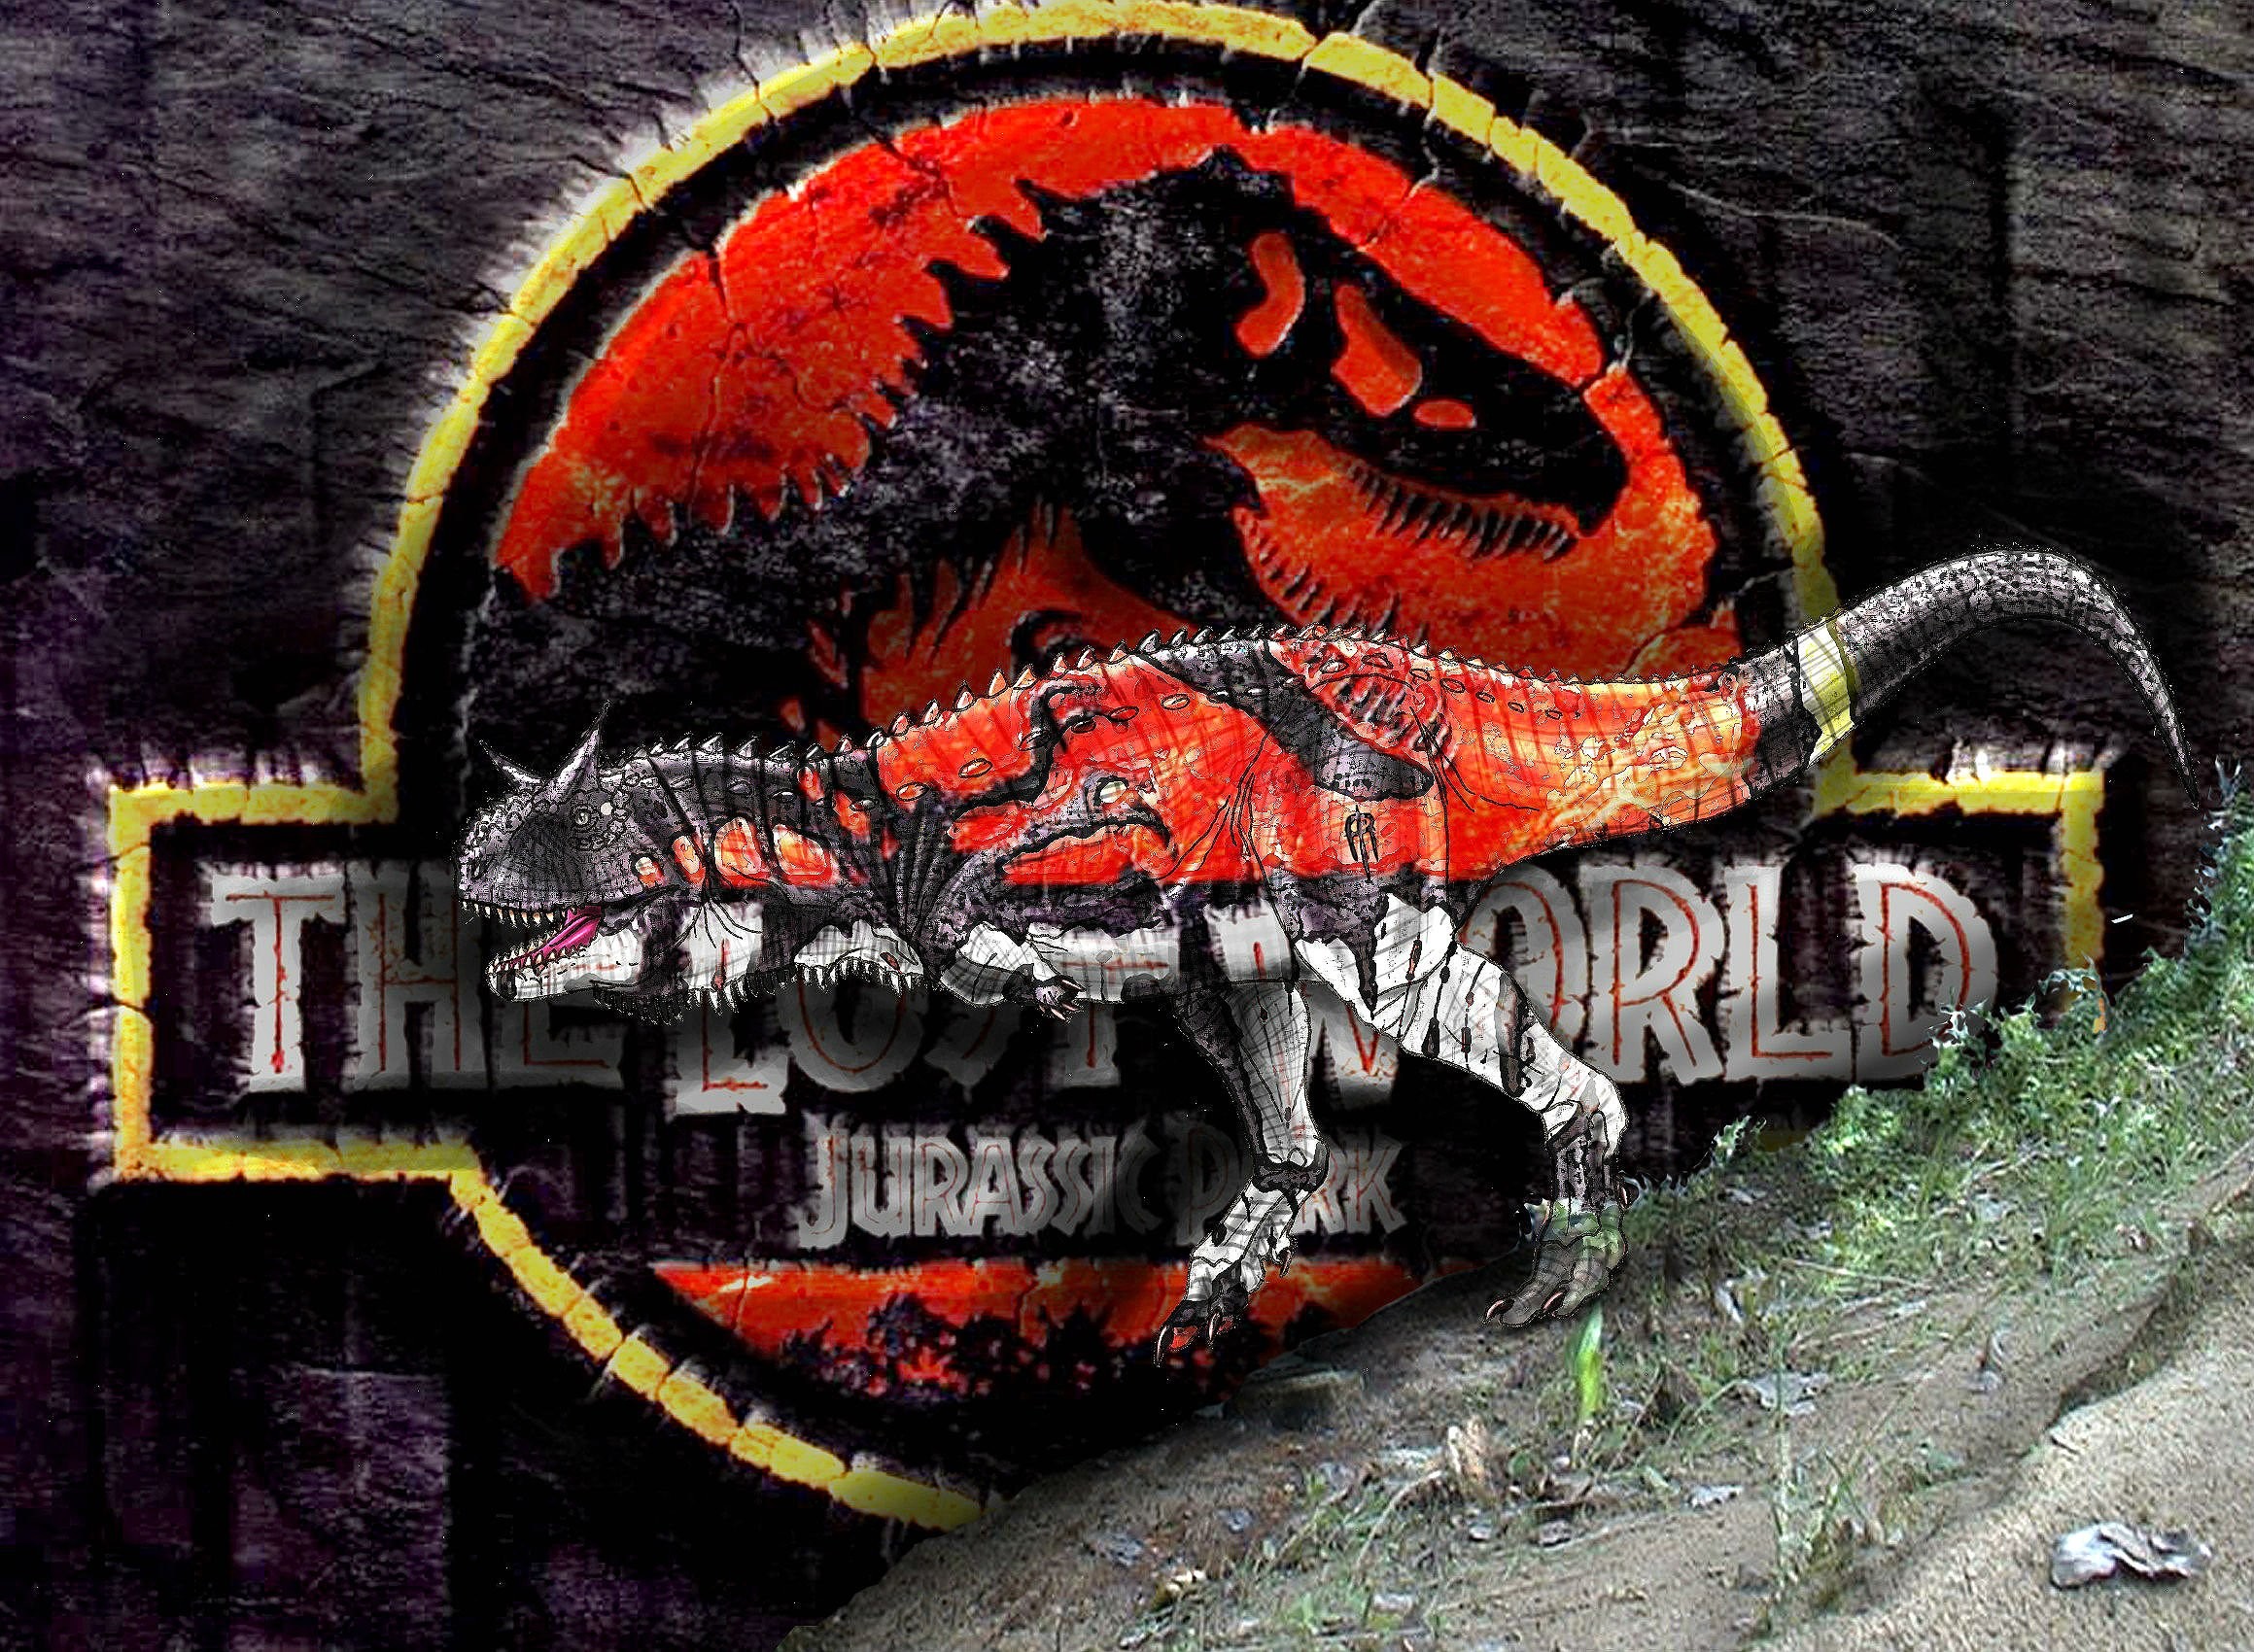 2319x1700 JURASSIC WORLD adventure sci-fi dinosaur fantasy film 2015 park (7)  wallpaper |  | 366949 | WallpaperUP